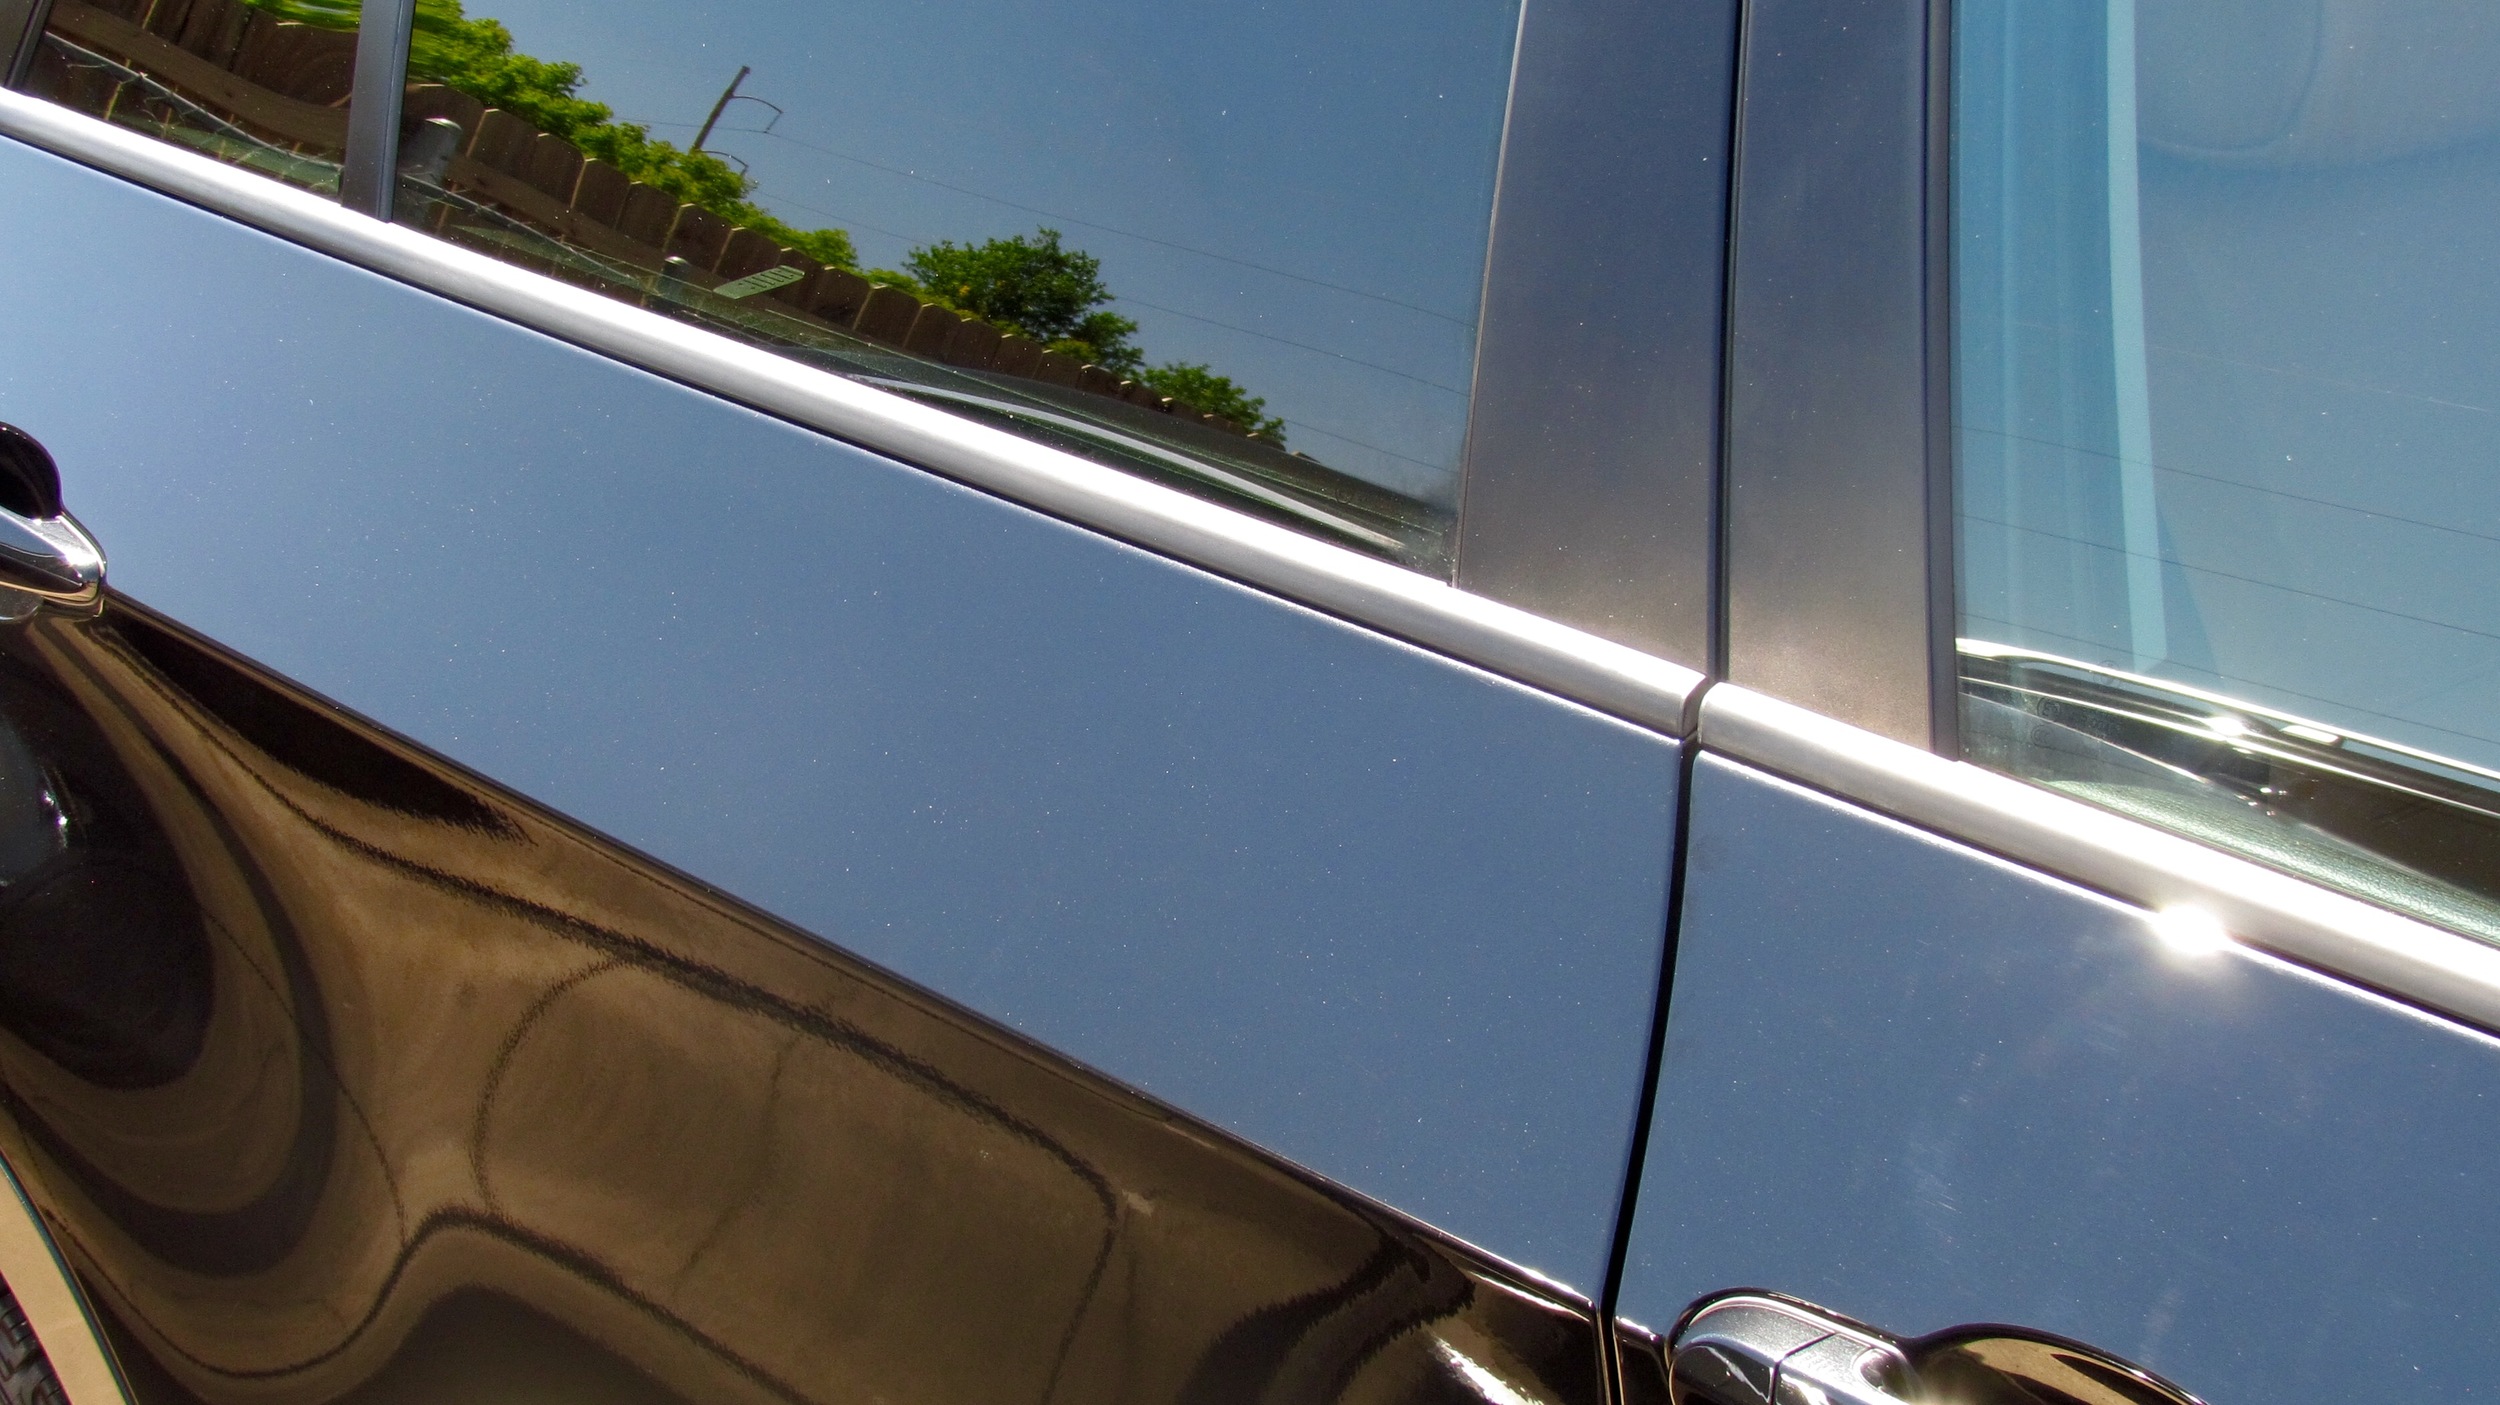 BMW X5 (New Car Slate)